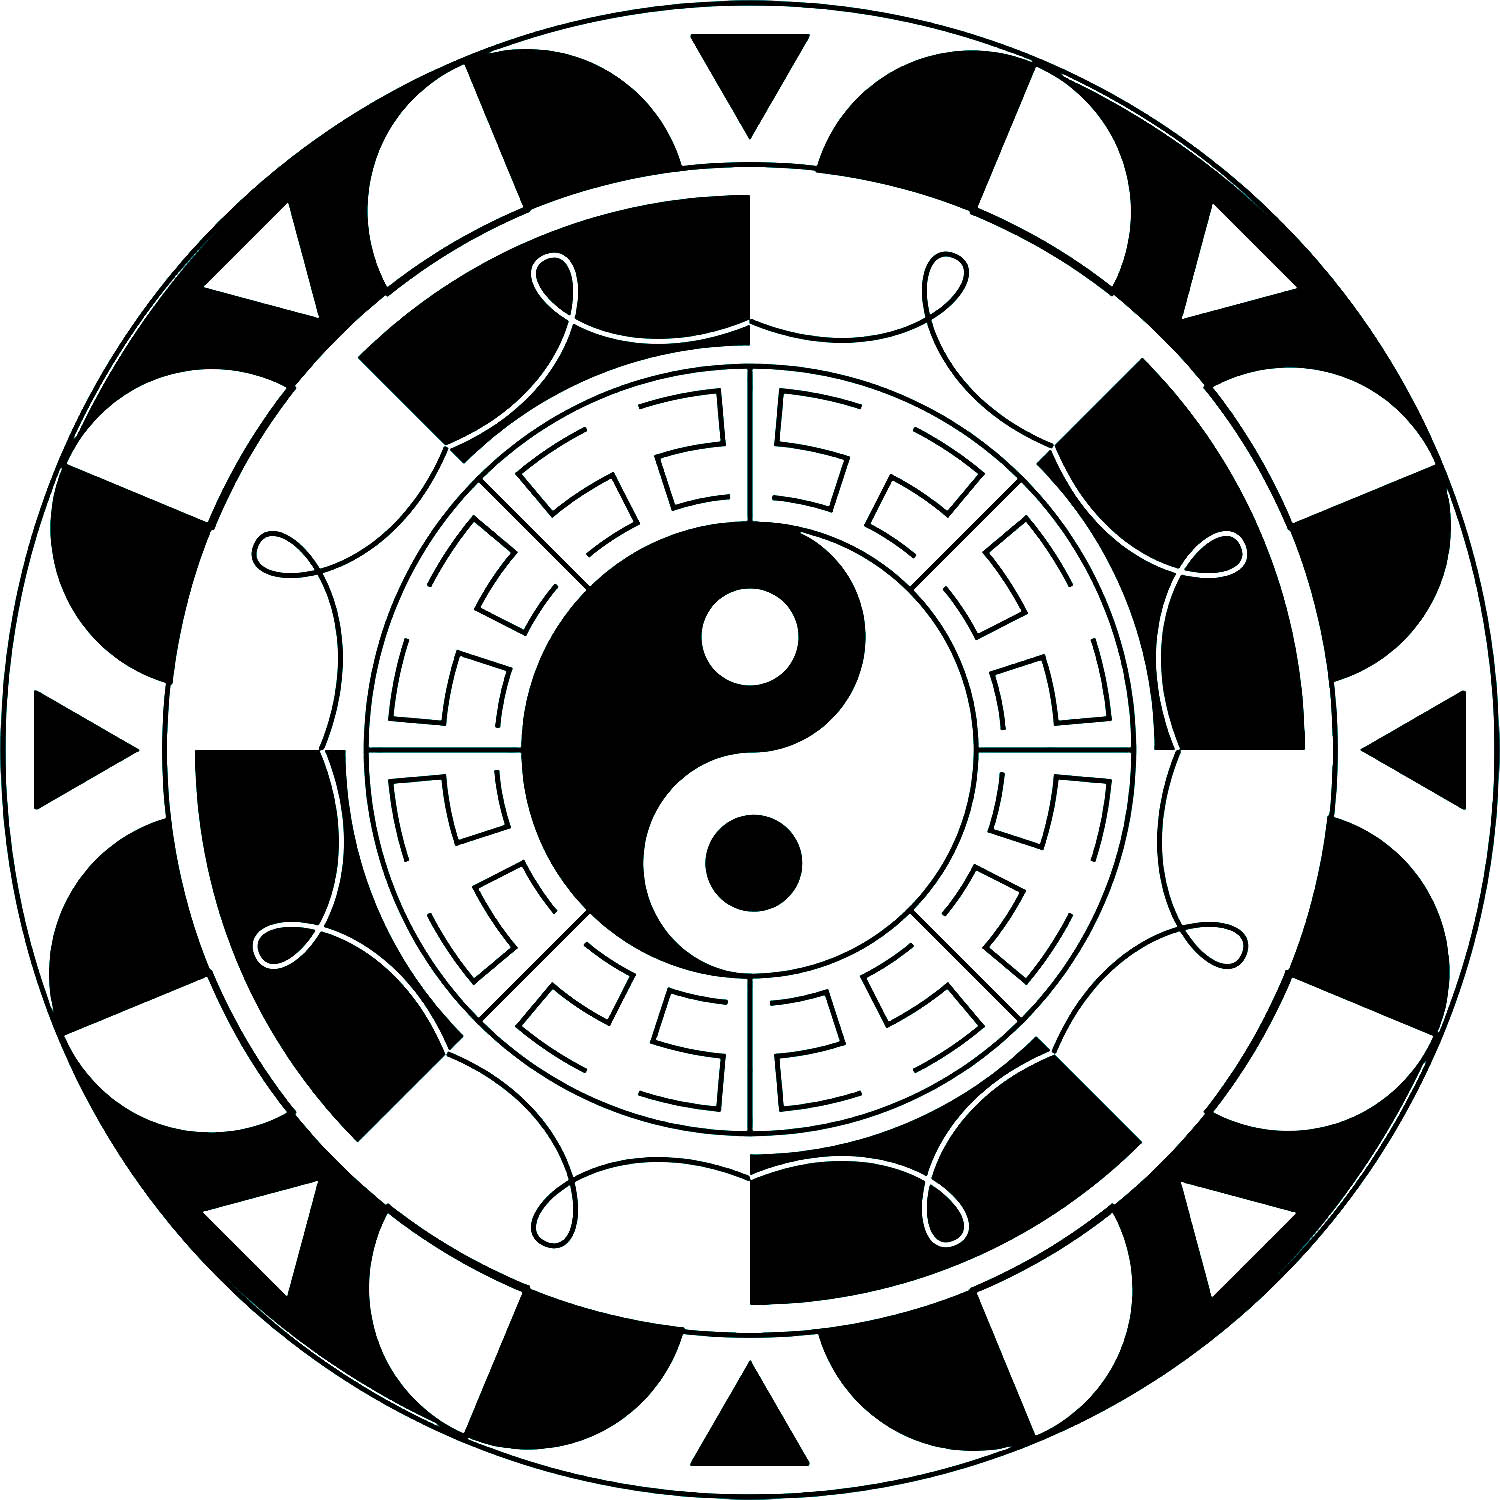 Mandala avec peu de détails et le symbole Yin & Yang en son centre